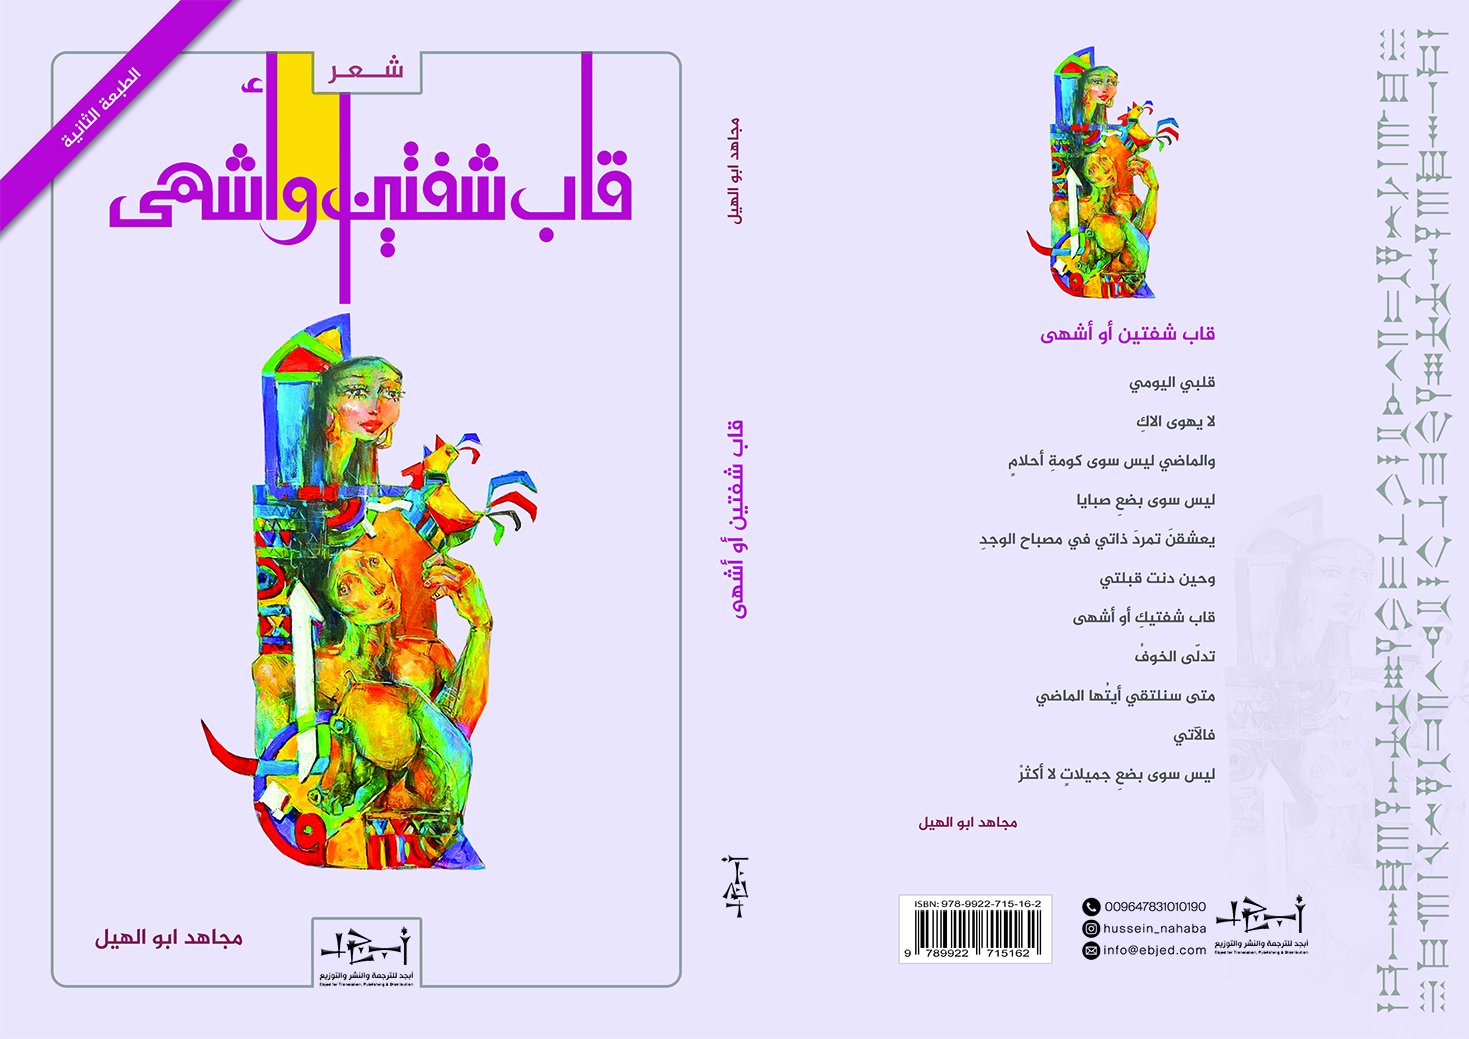 عنوان الكتاب: قاب شفتين أو أشهى تأليف: مجاهد أبو الهيل التصنيف: ديوان شعر